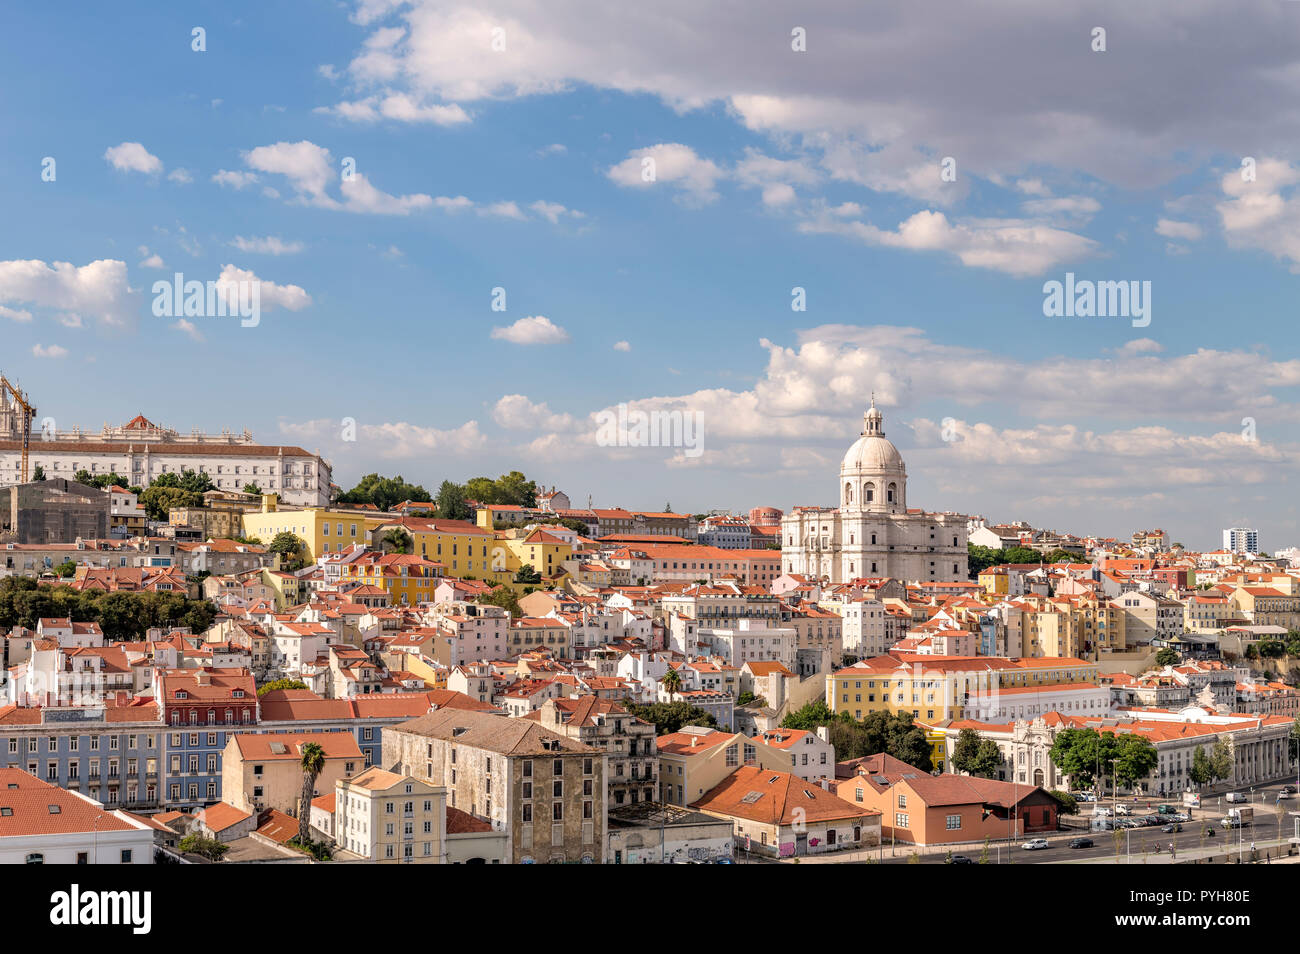 Lisbon skyline with the national Pantheon / Panteão Nacional / Santa Engracia Church prominent. Stock Photo